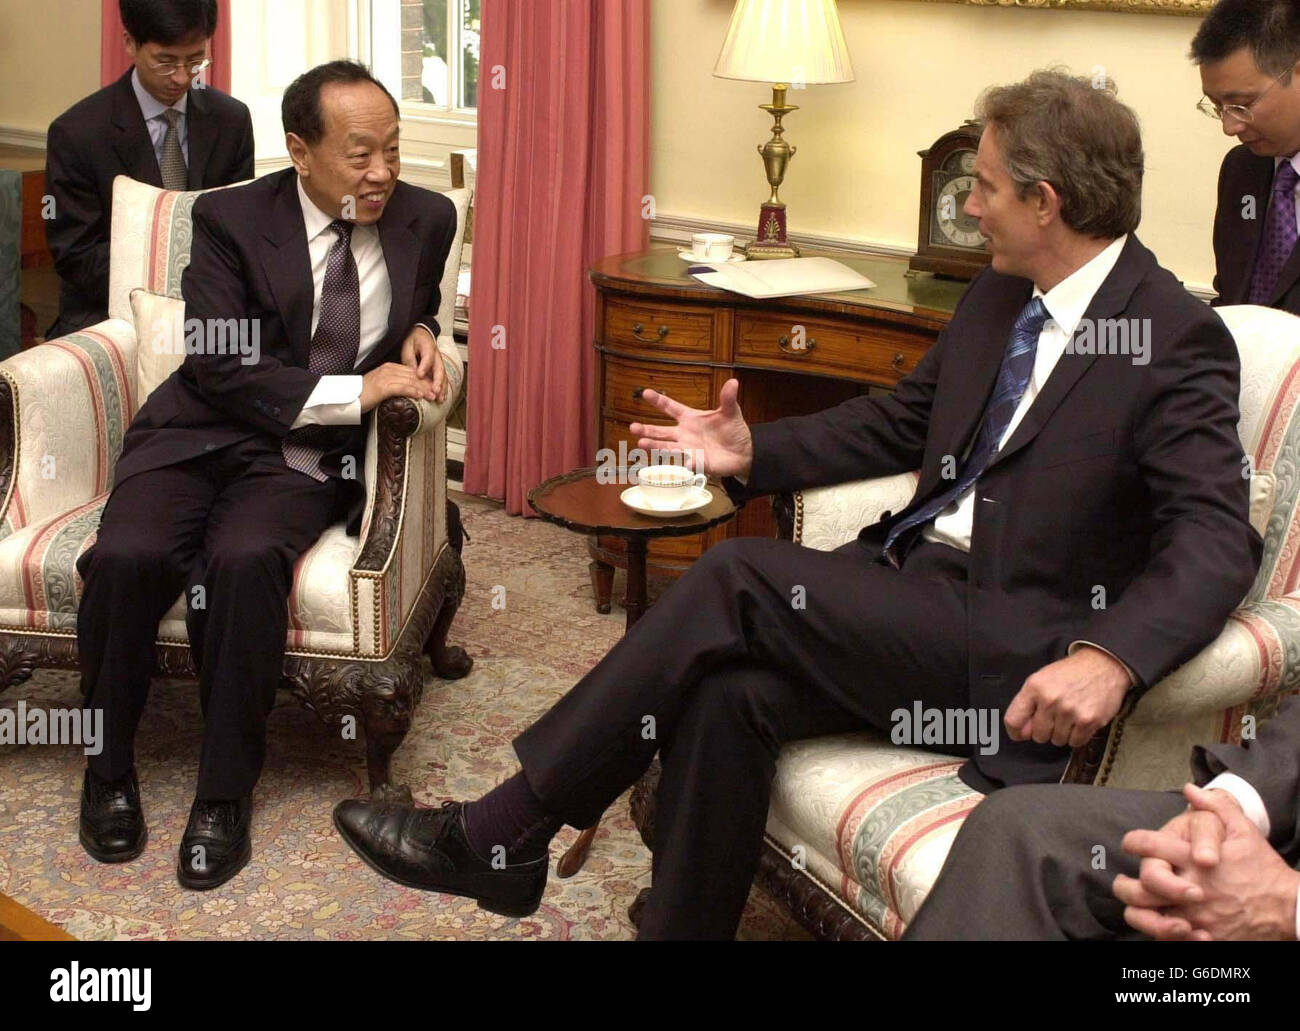 Der chinesische Außenminister Li Xhao Xing trifft sich mit dem britischen Premierminister Tony Blair in der Downing Street in London. Stockfoto